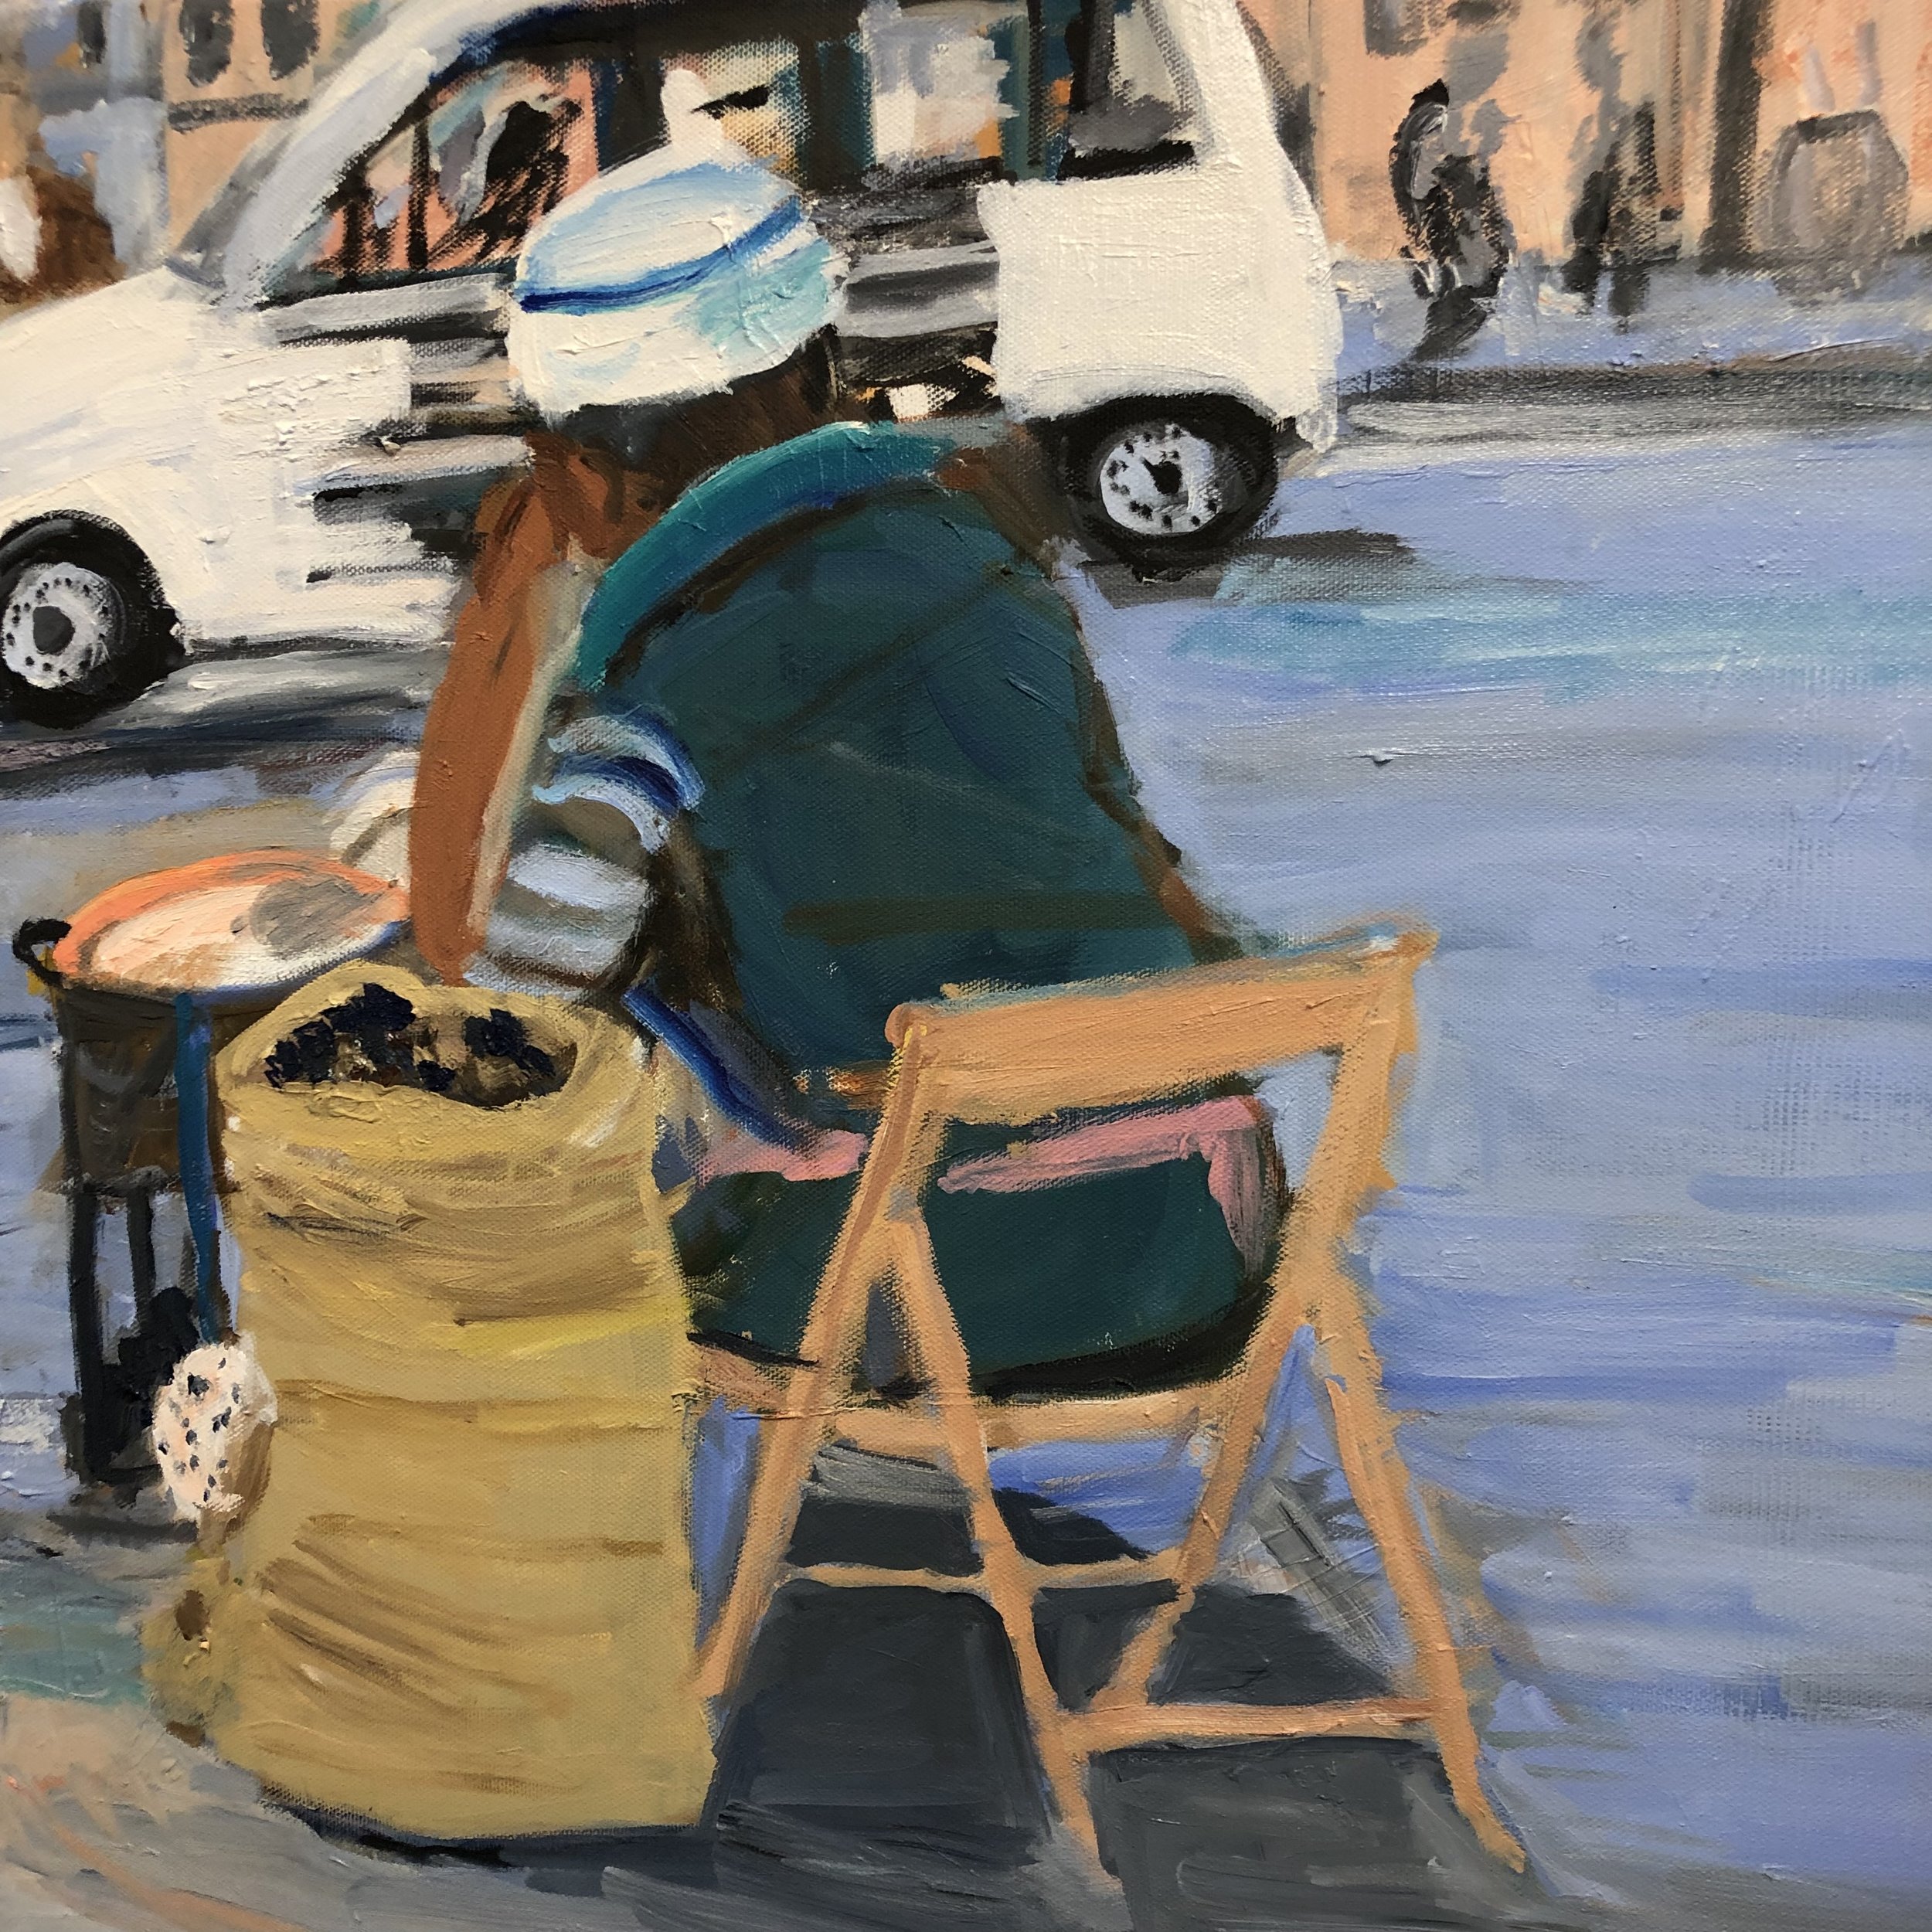 Streetscene in Rome (Chestnut seller)